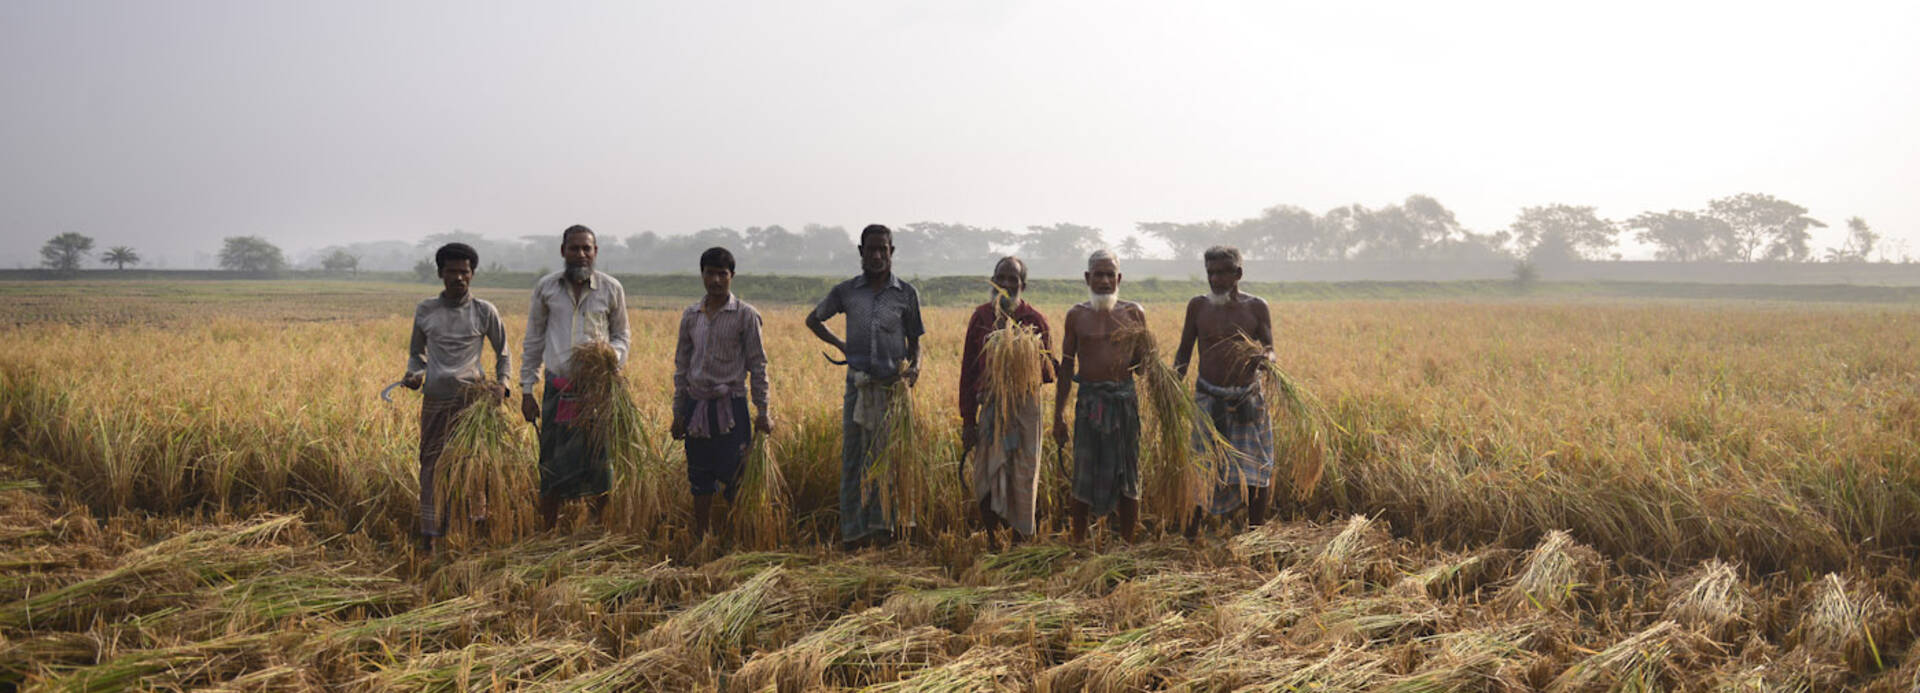 Männer aus Bangladesch auf einem Getreidefeld